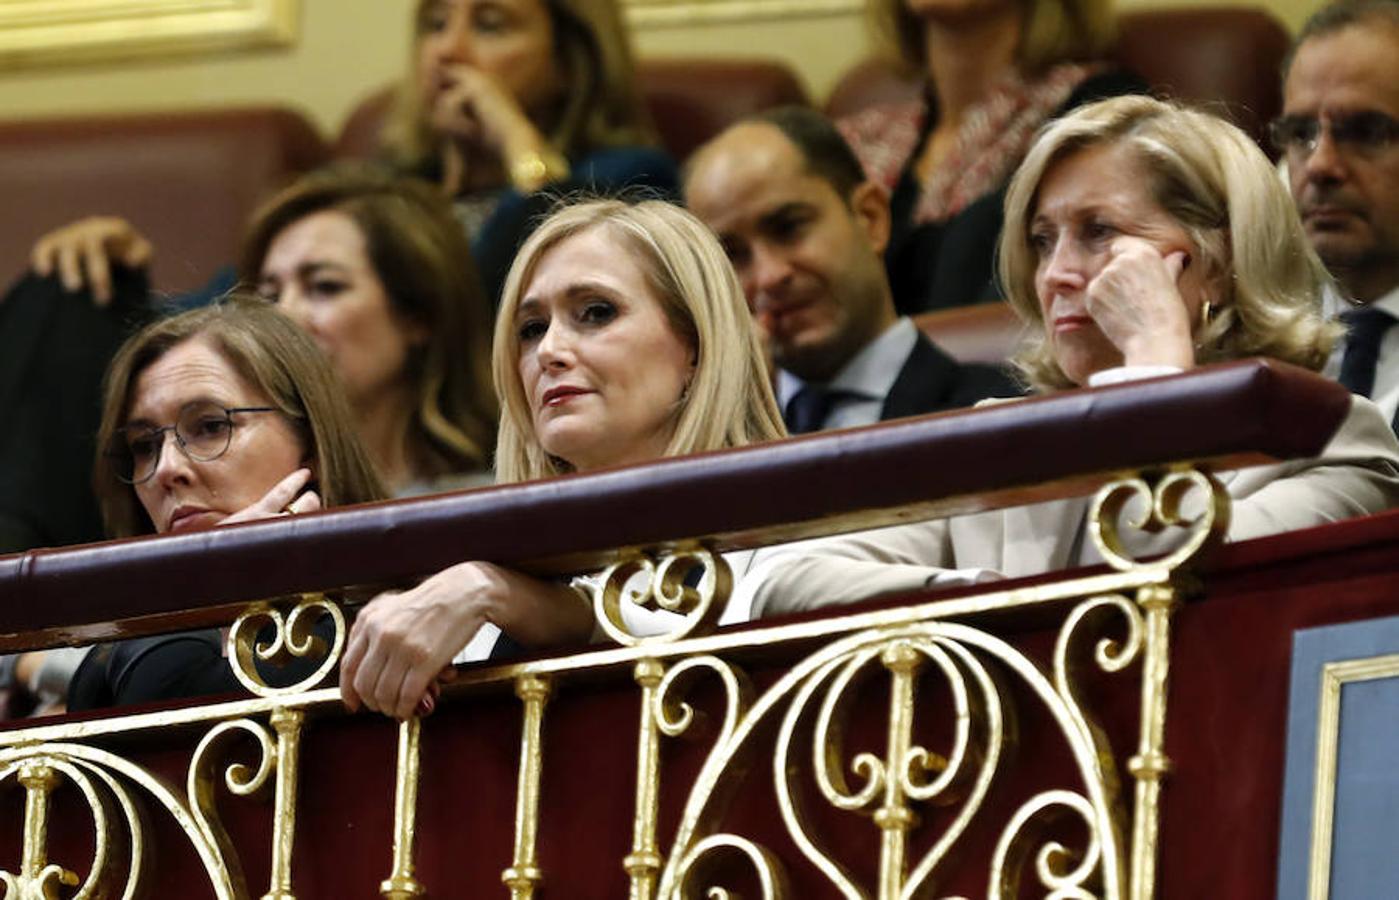 Elvira Fernández, esposa del líder del PP, Mariano Rajoy, junto a la presidenta de la Comunidad de Madrid, Cristina Cifuentes, y la delegada del Gobierno en Madrid, Concepción Dancausa, en la tribuna de invitados durante el debate de investidura de Rajoy.